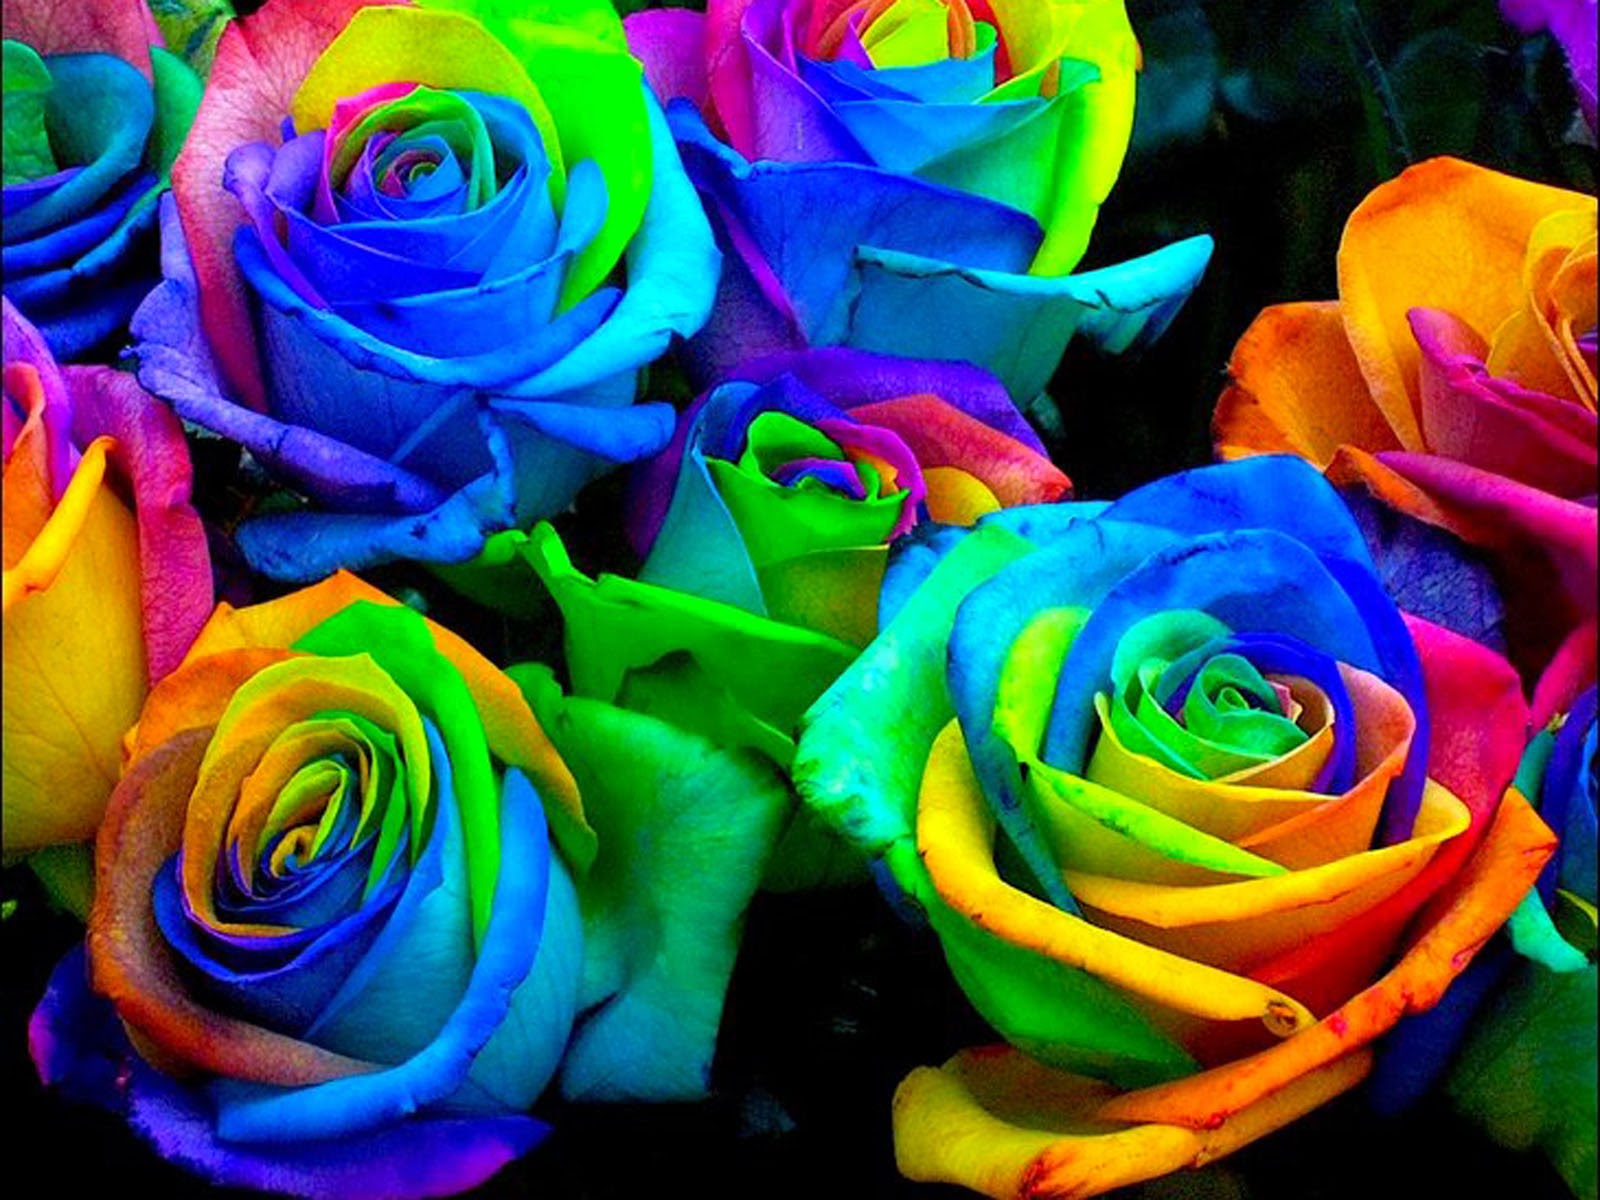 rainbow rose wallpaper,flower,rose,flowering plant,garden roses,rainbow rose